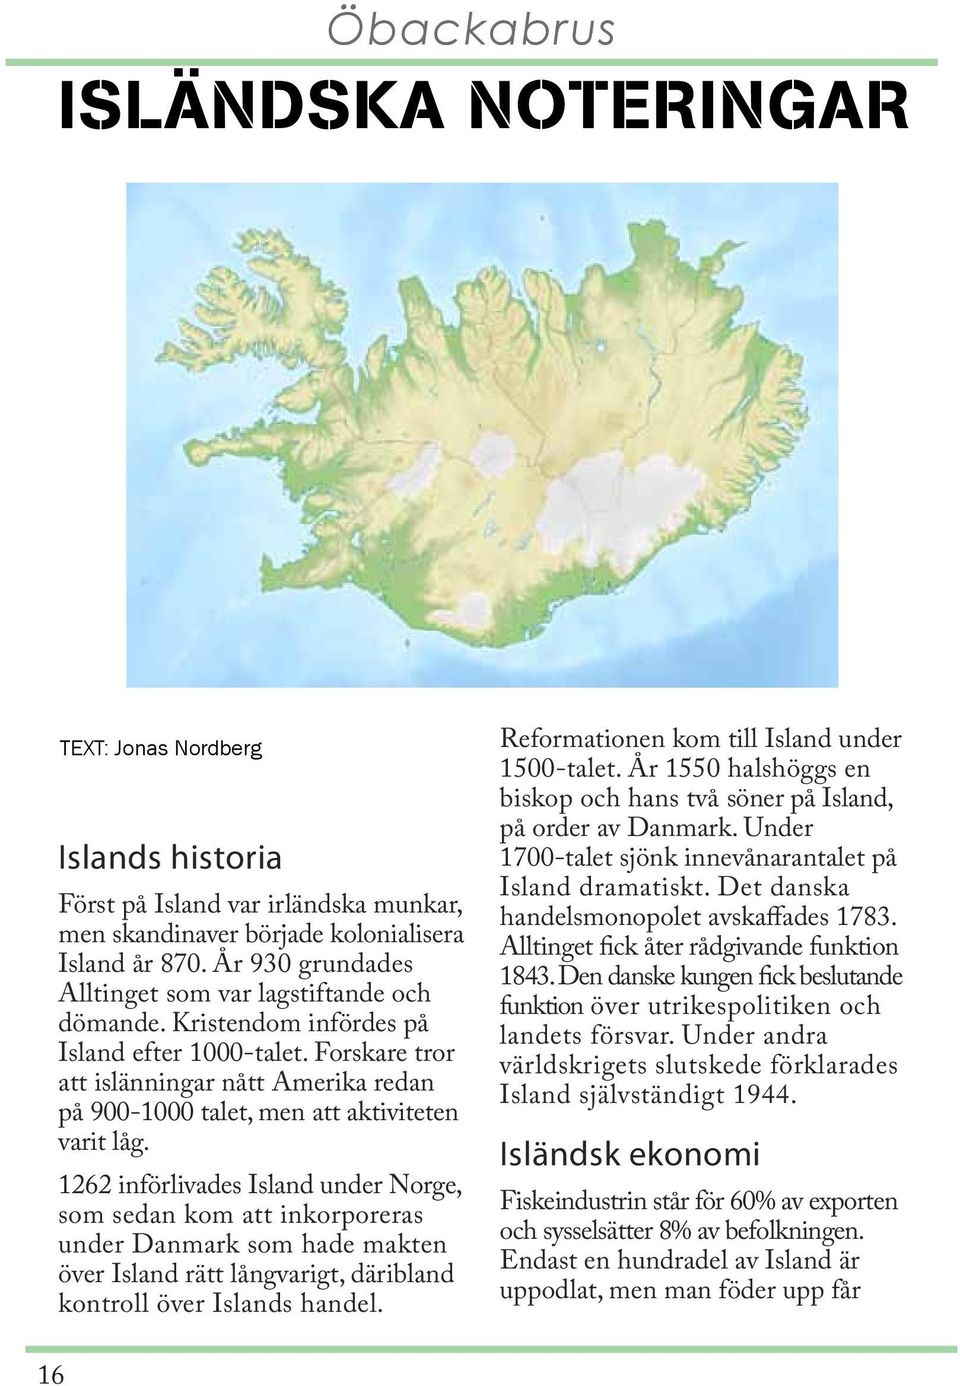 Forskare tror att islänningar nått Amerika redan på 900-1000 talet, men att aktiviteten varit låg.